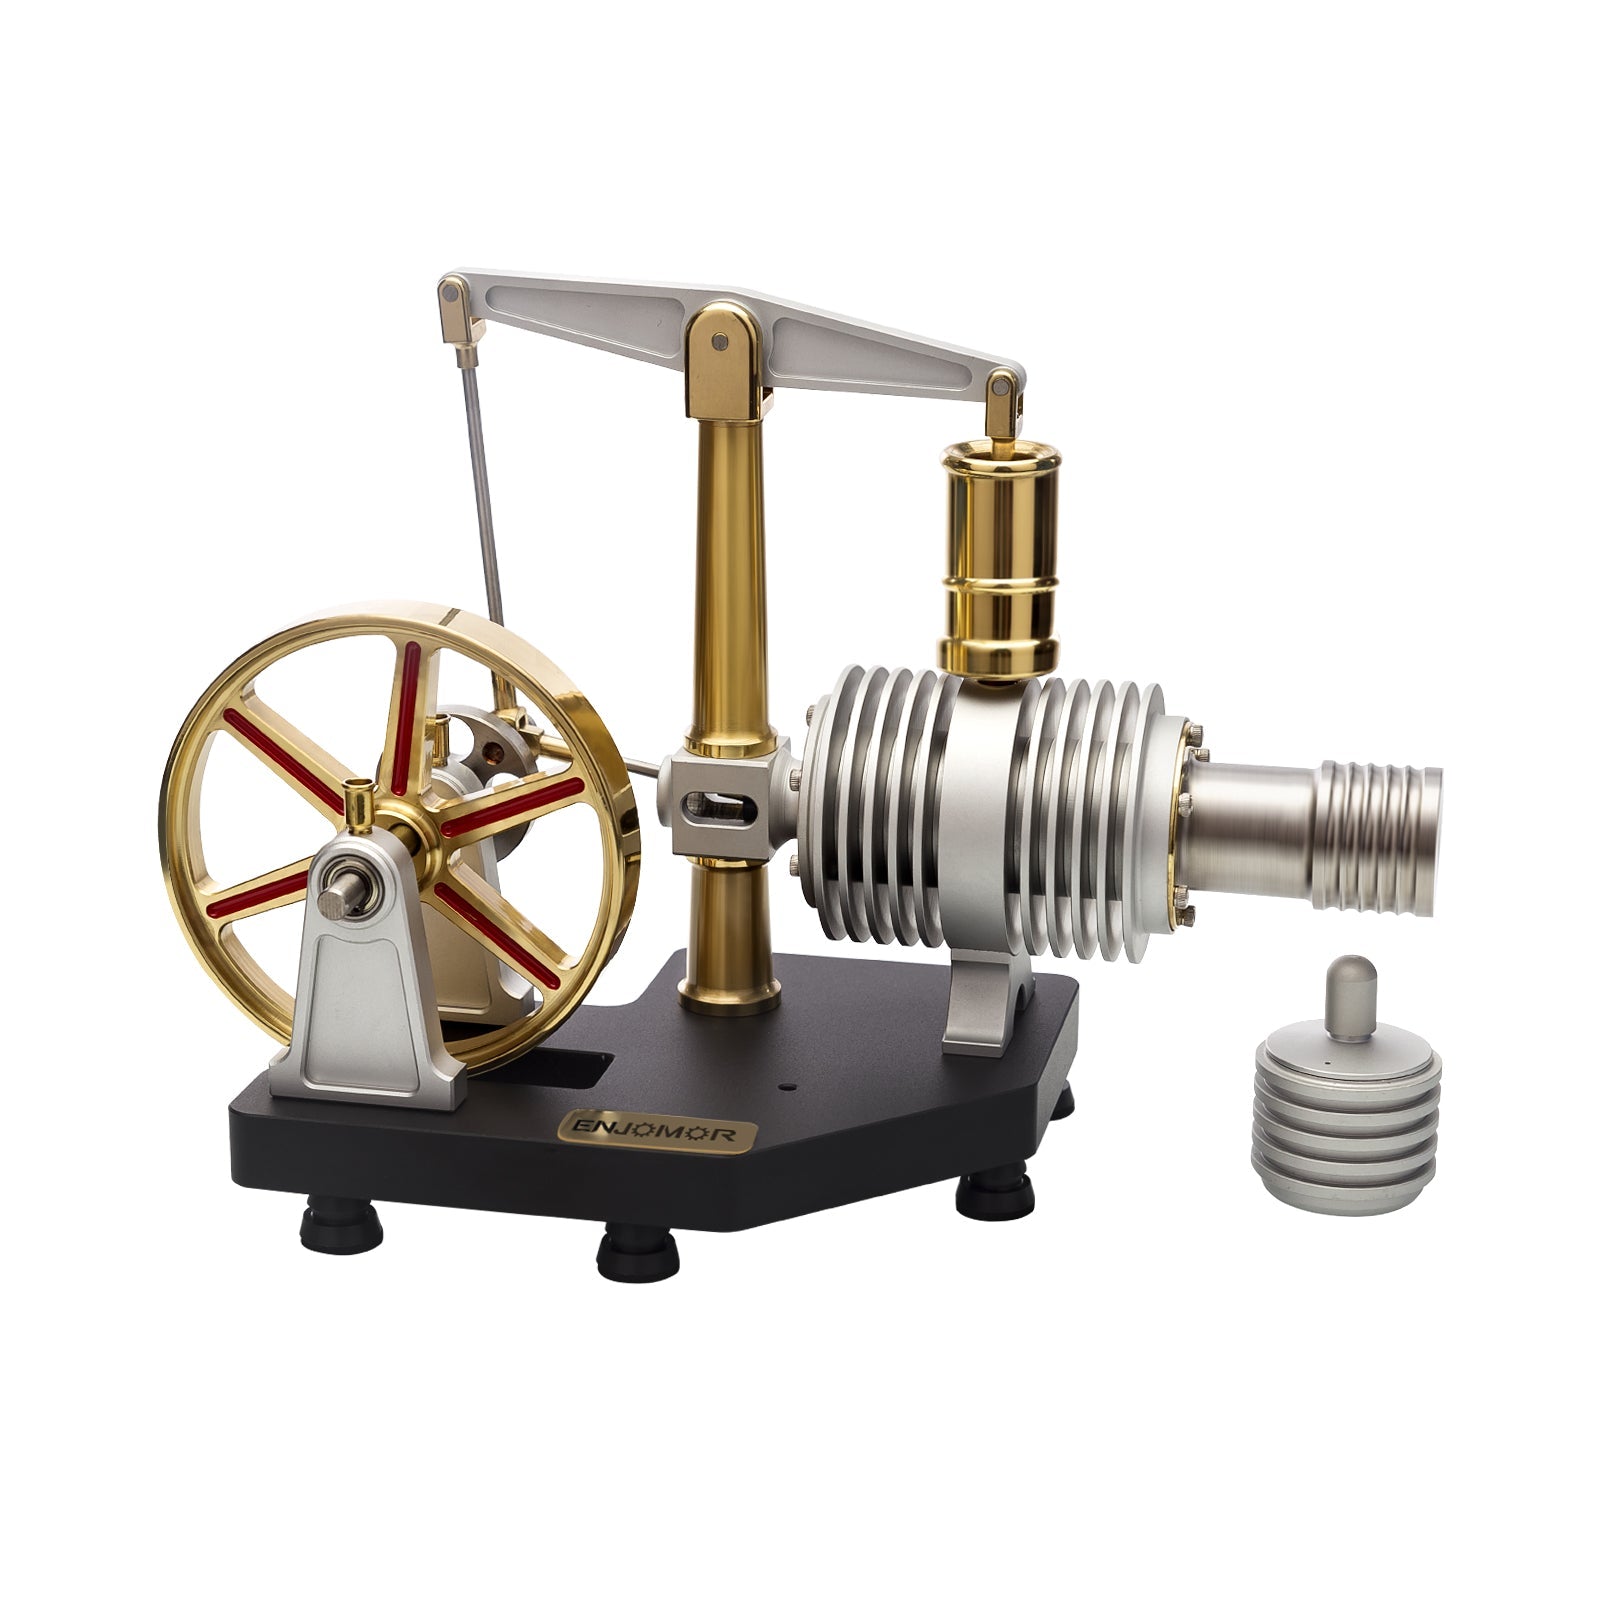 ENJOMOR Full Metal Stirling Engine Model Steam Science Educational Engine Toy